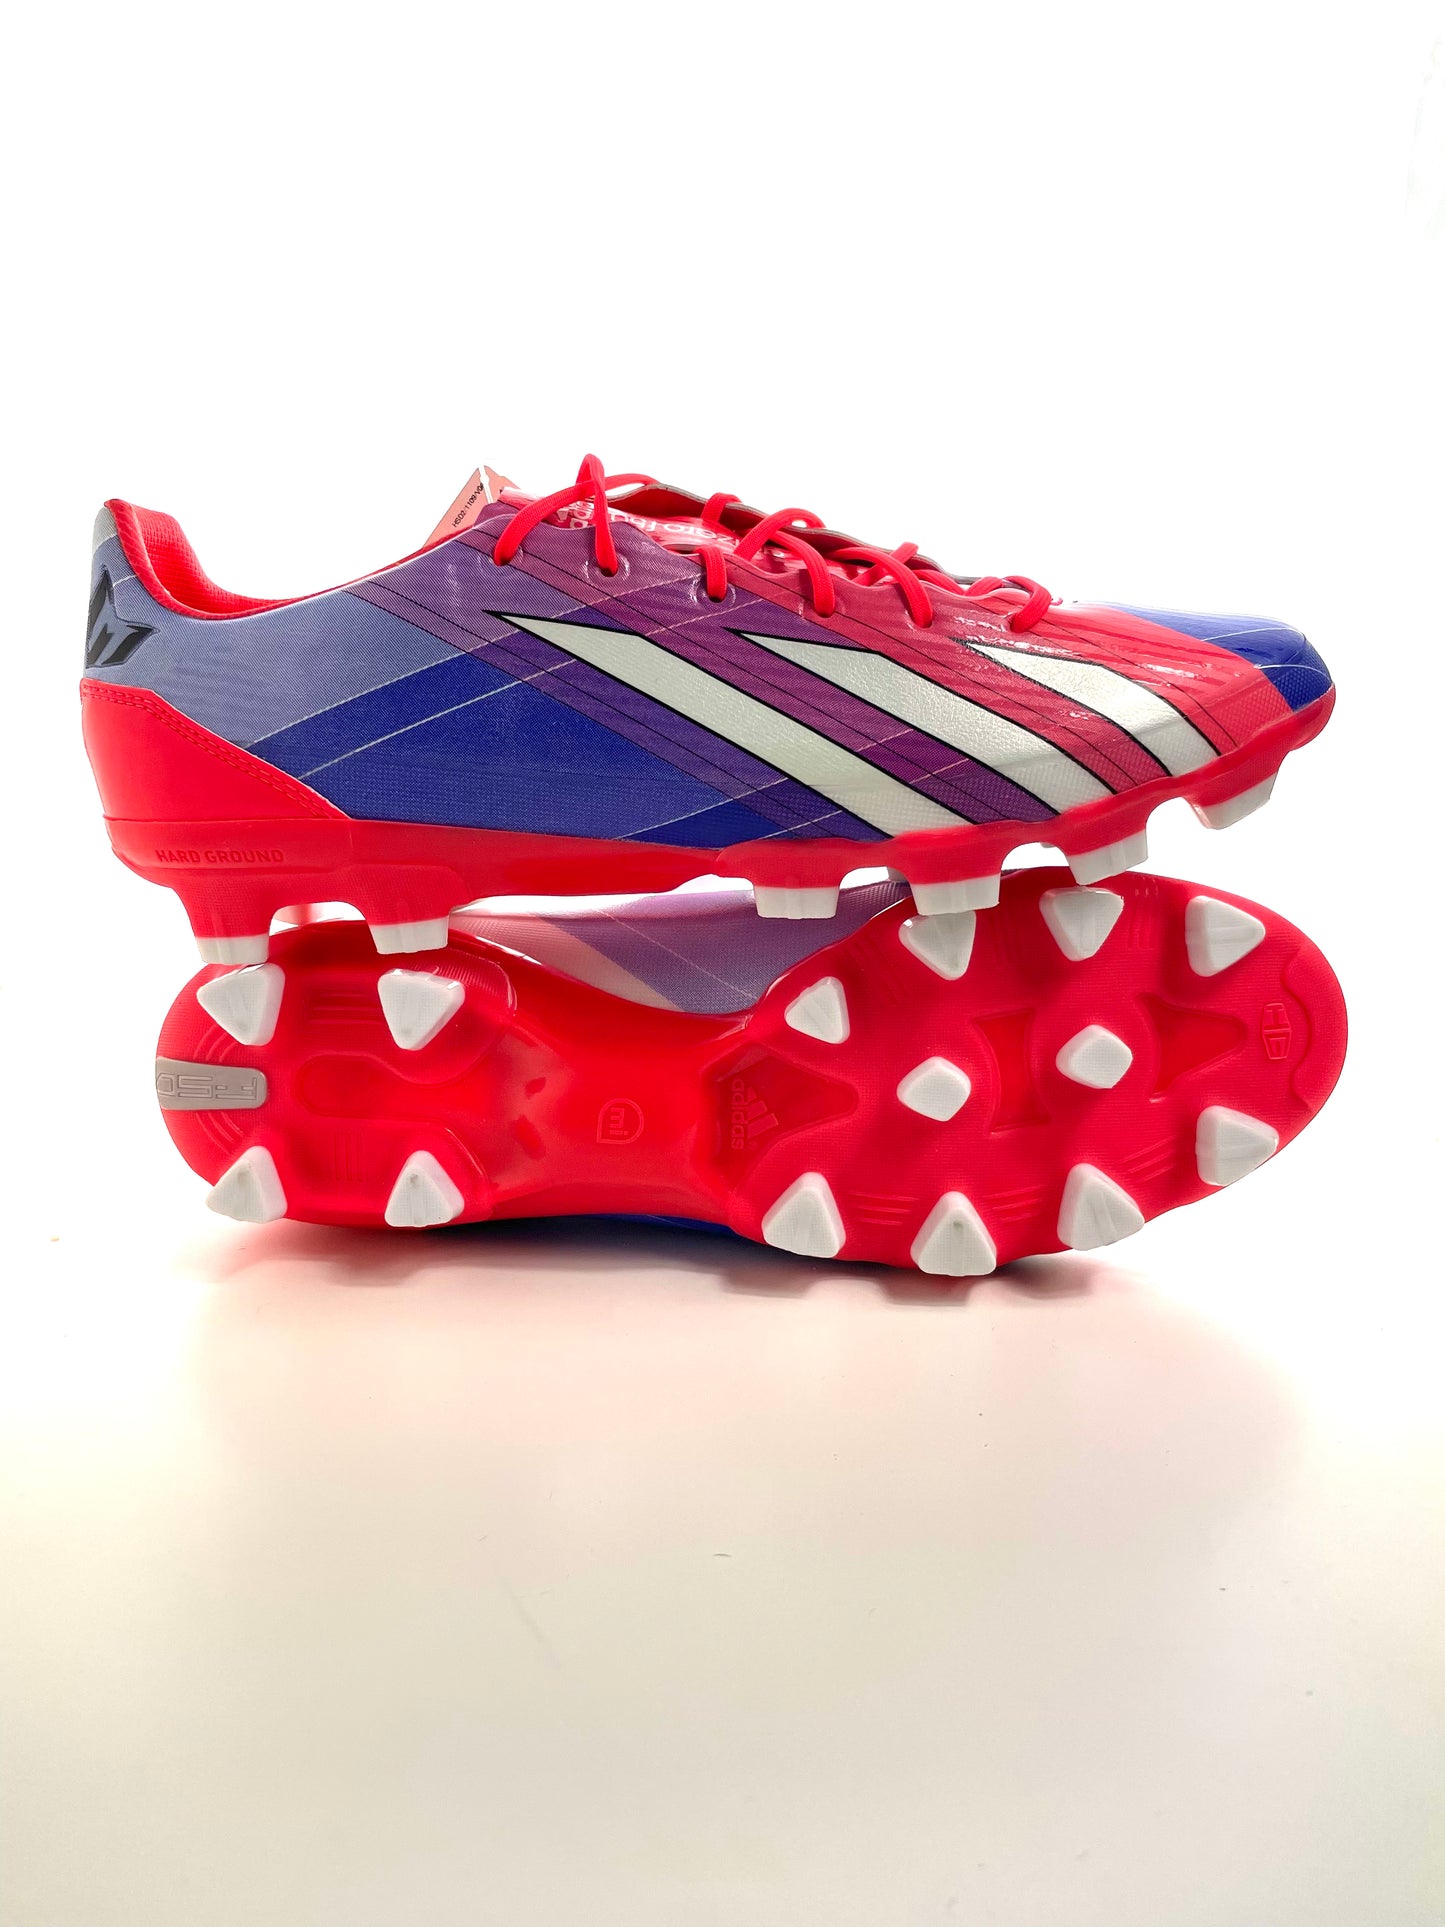 F50 Messi – Halt's Boots